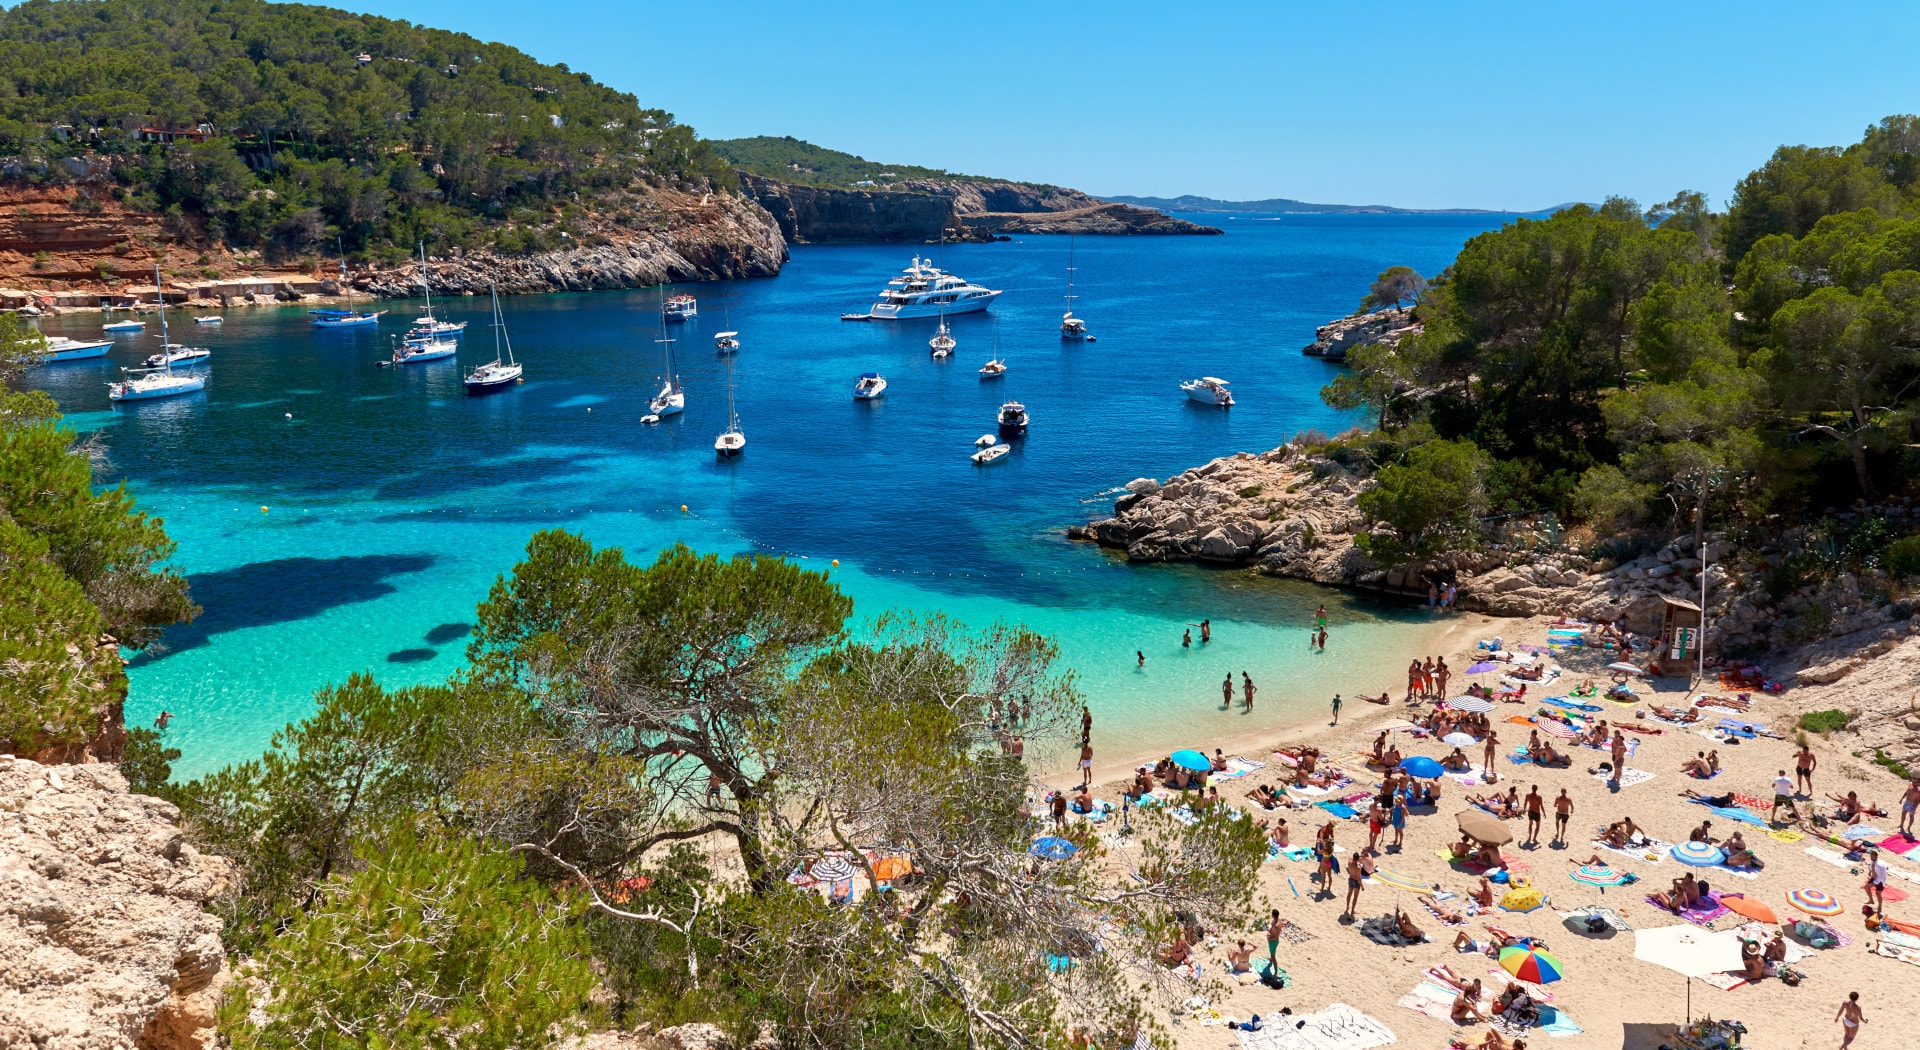  Strand und Bucht Cala Salada auf Ibiza